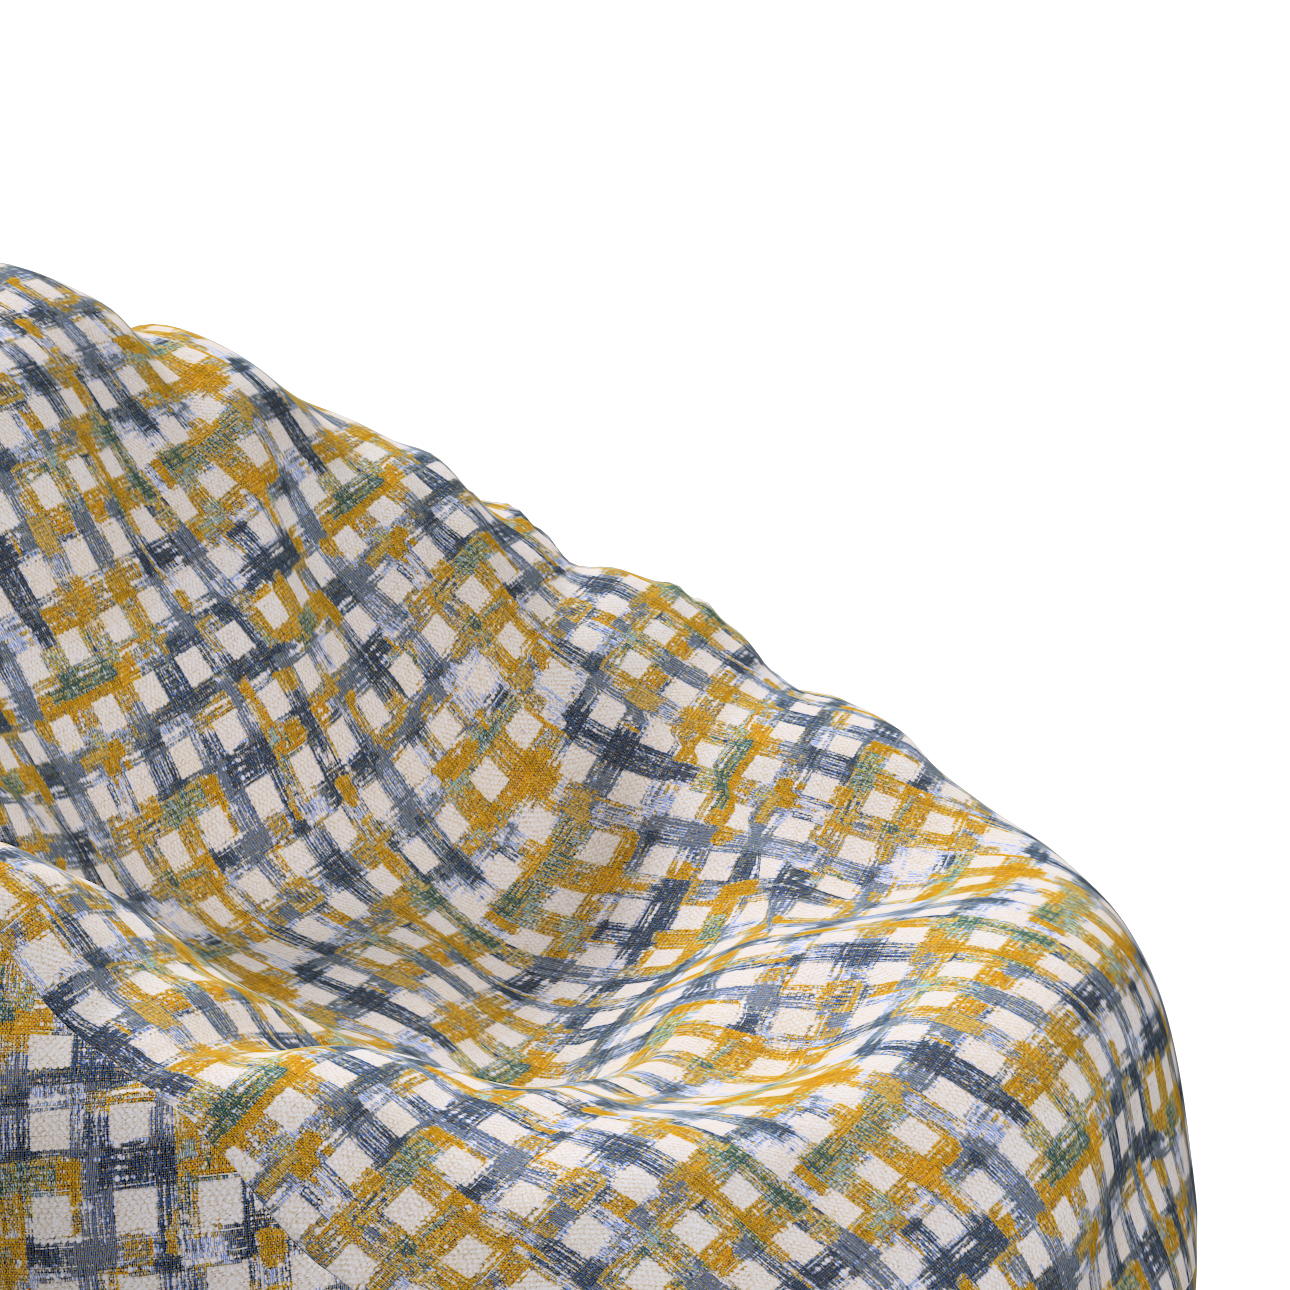 Bezug für Sitzsack, blau-gelb, Bezug für Sitzsack Ø80 x 115 cm, Cosy Home ( günstig online kaufen